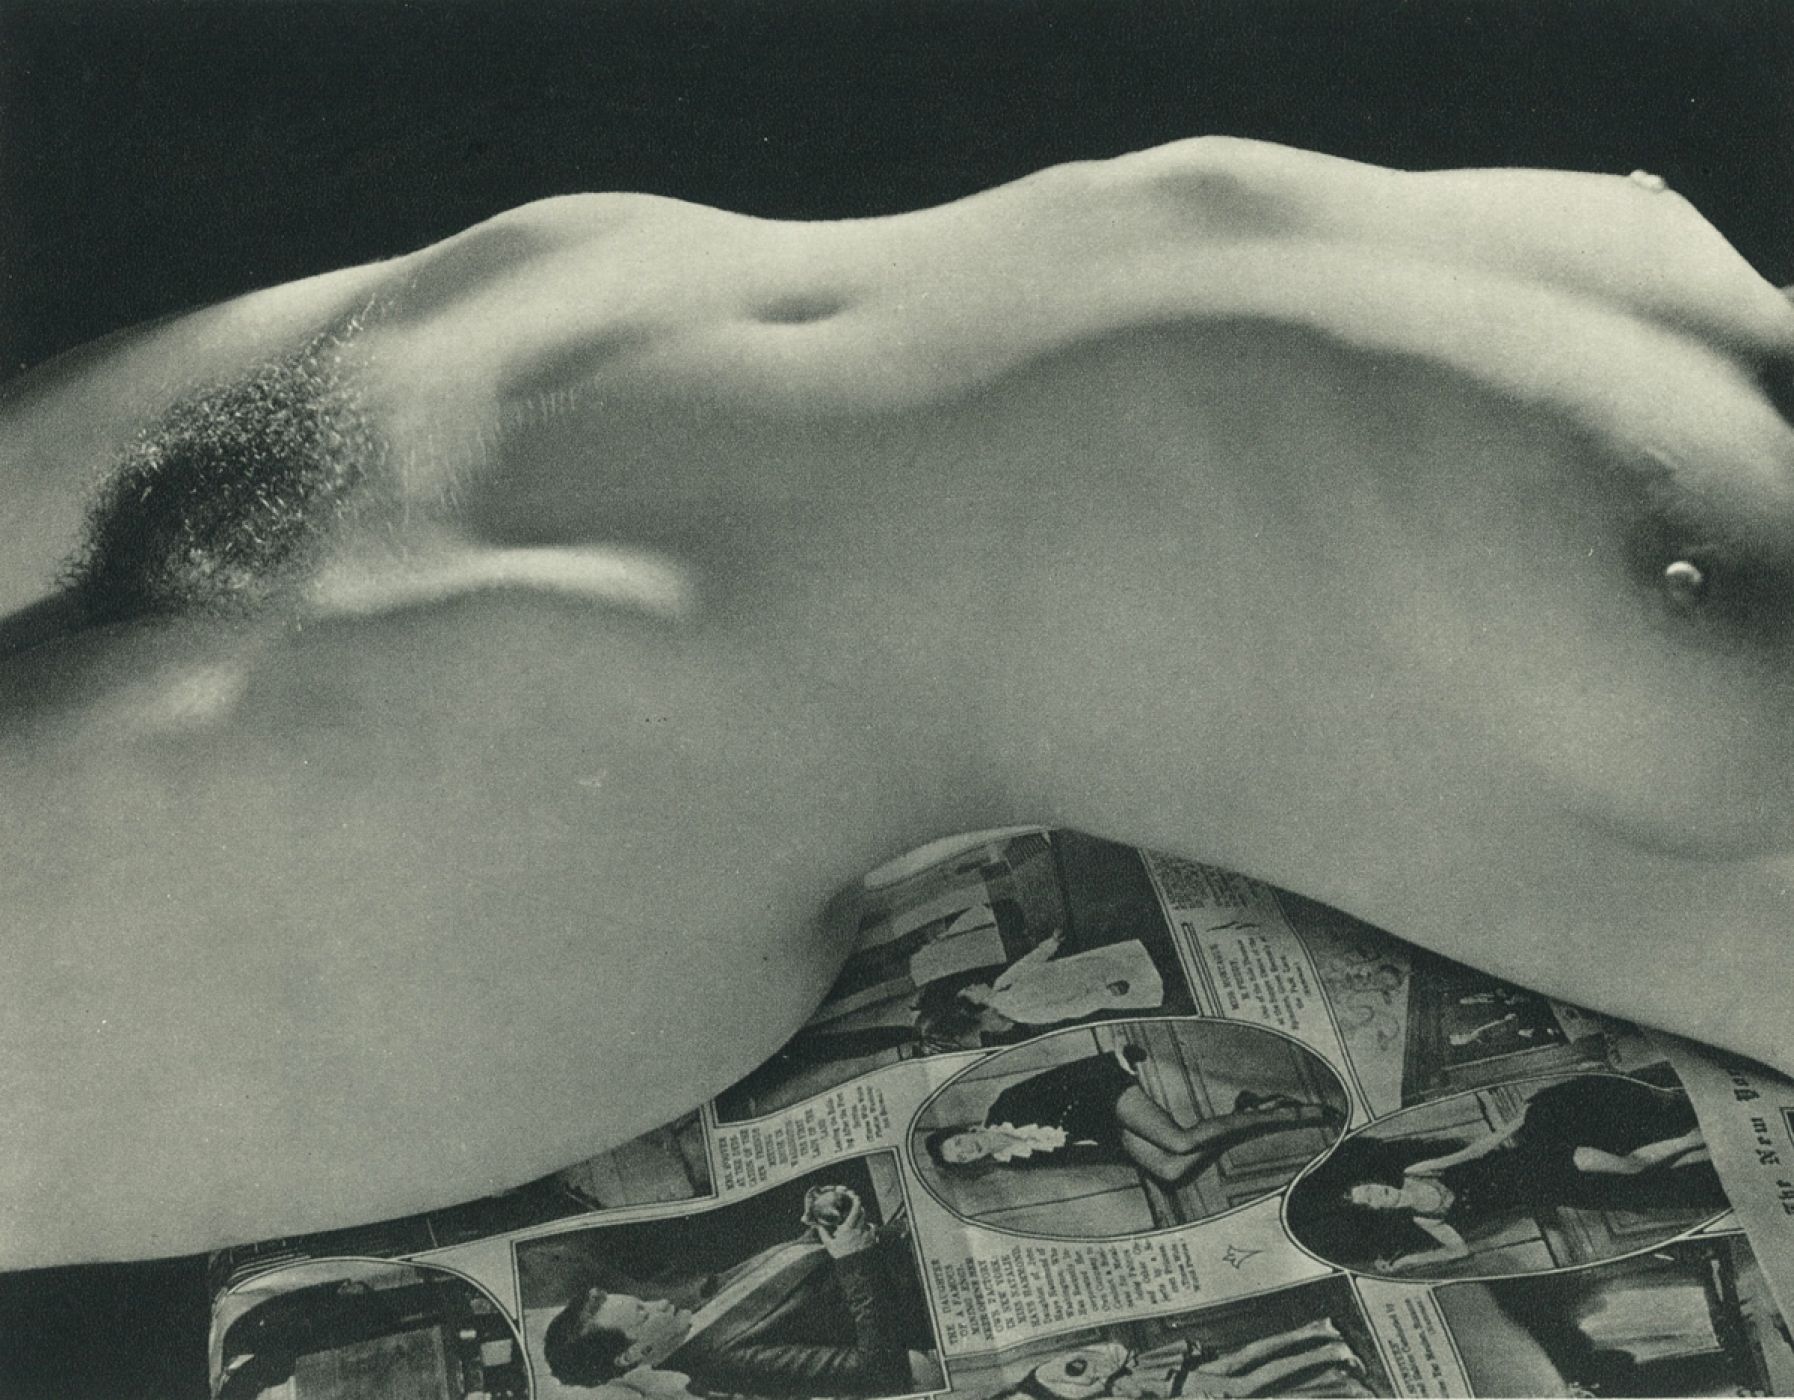 George Platt Lynes, “Nude”, 1930 ca.